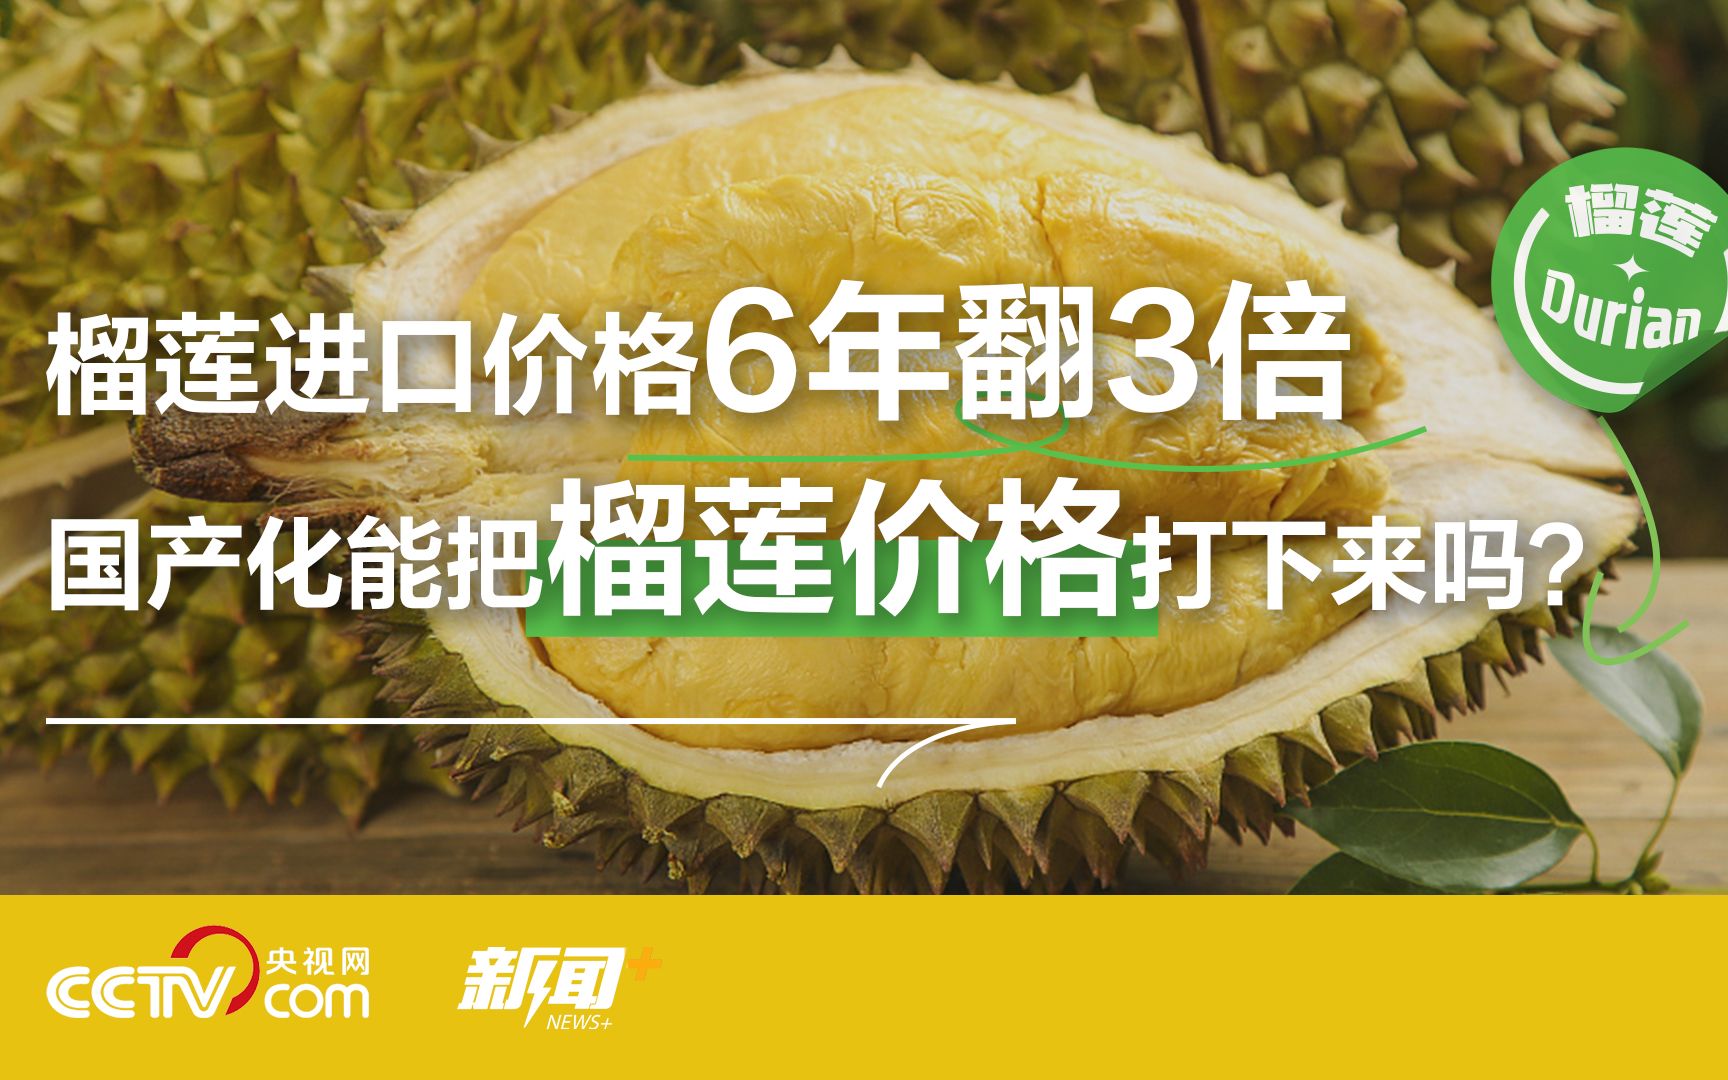 中国人有多爱吃榴莲？全球超三分之二榴莲被中国人吃掉